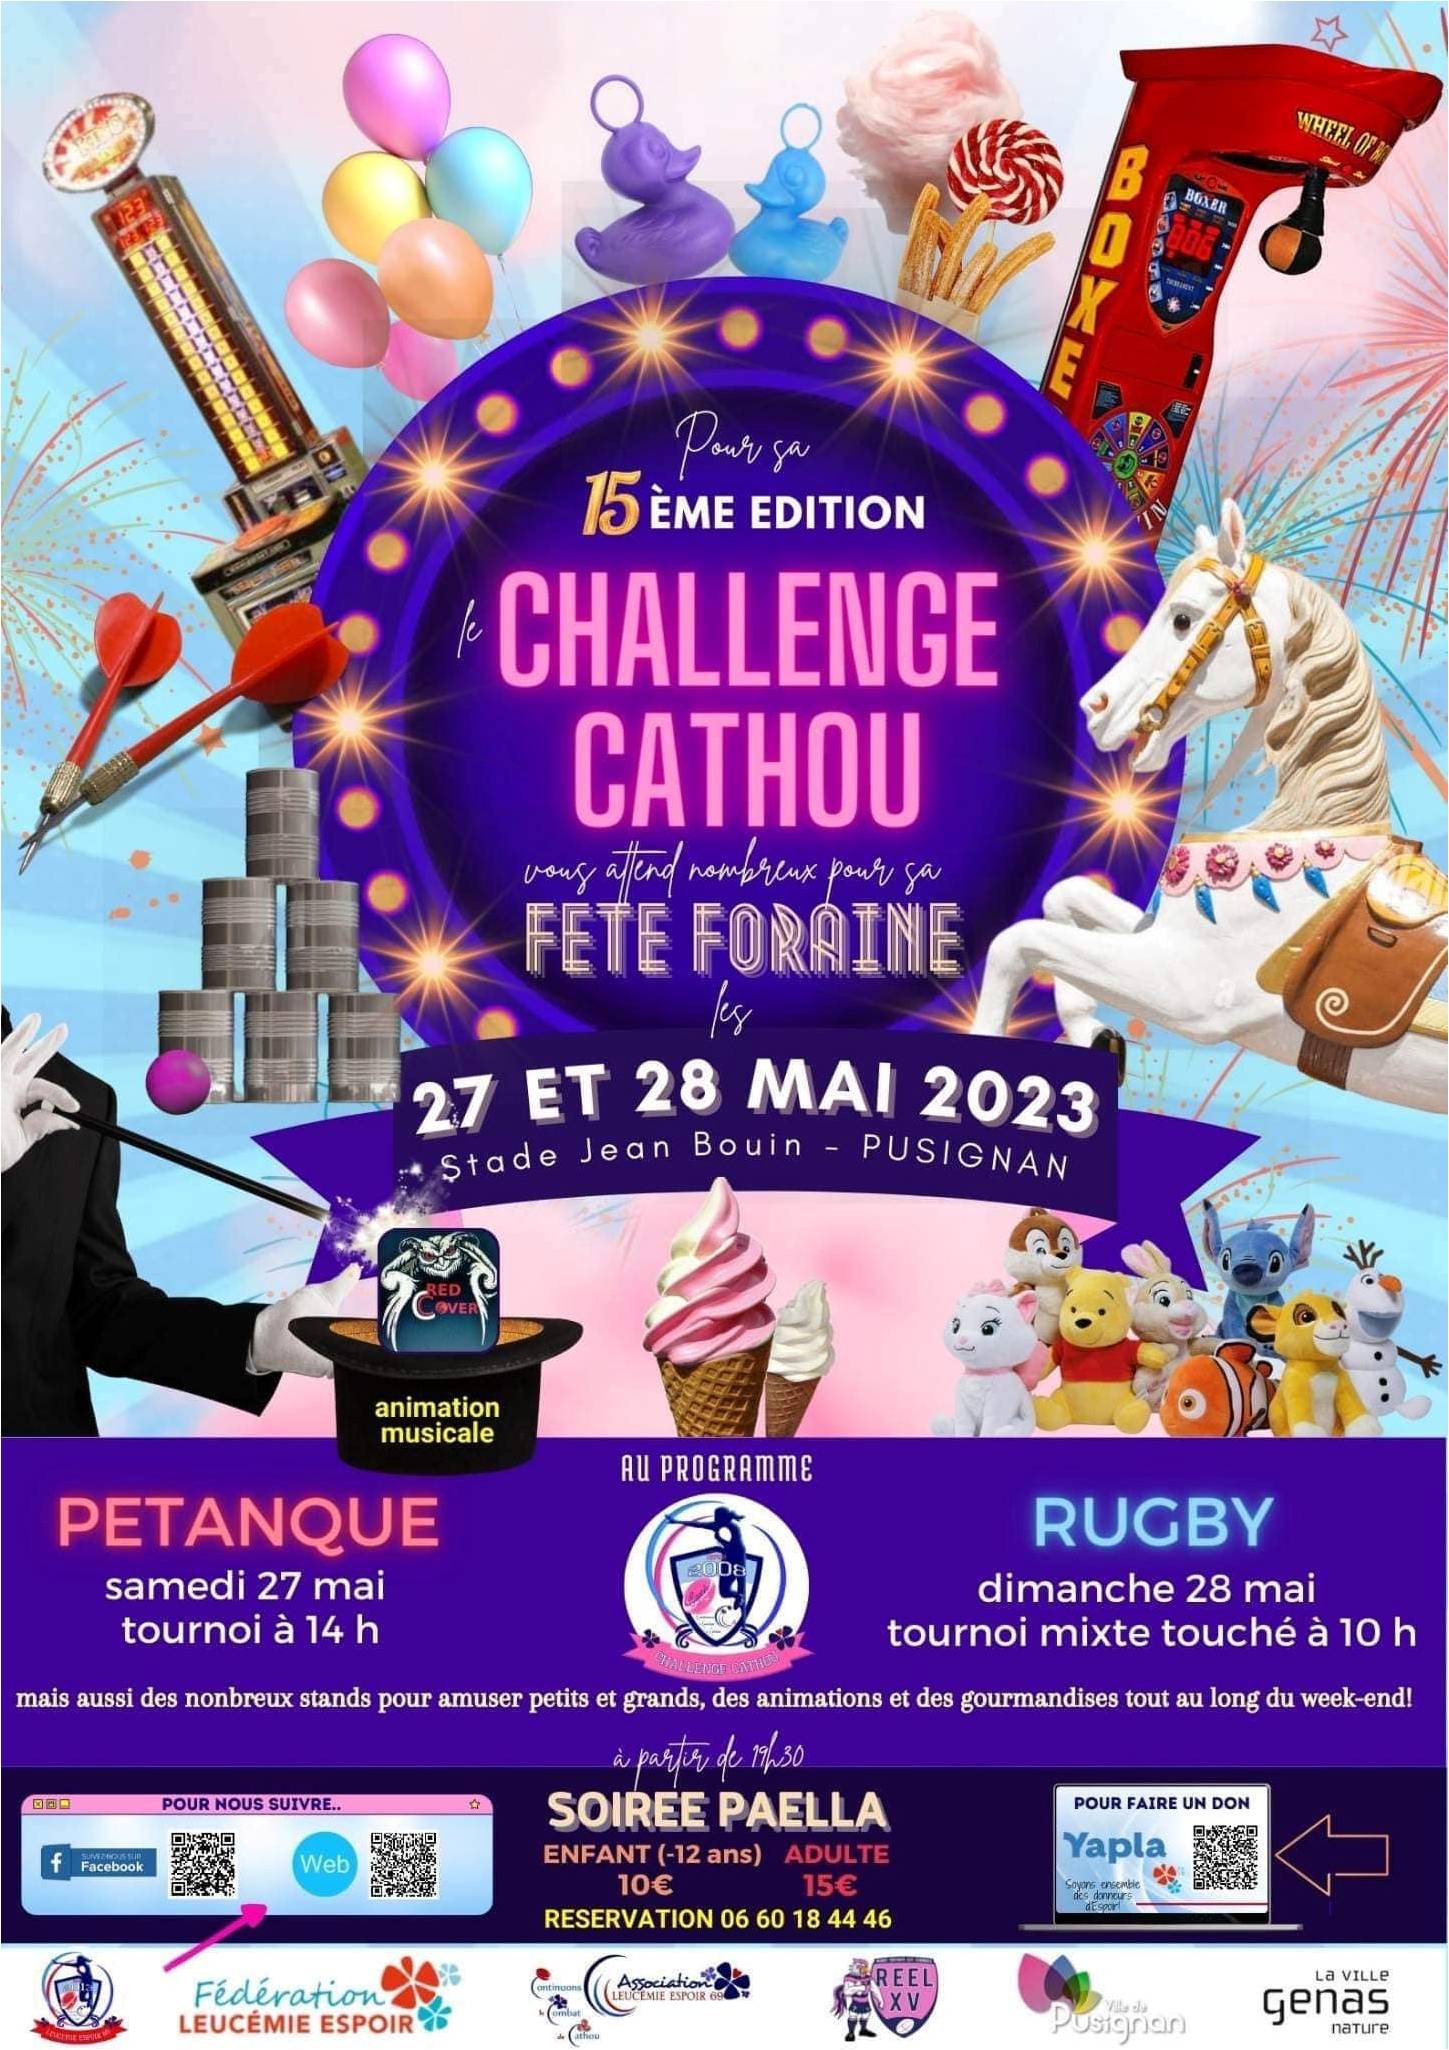 27-28 MAI 2023 - 15ième Edition du CHALLENGE CATHOU